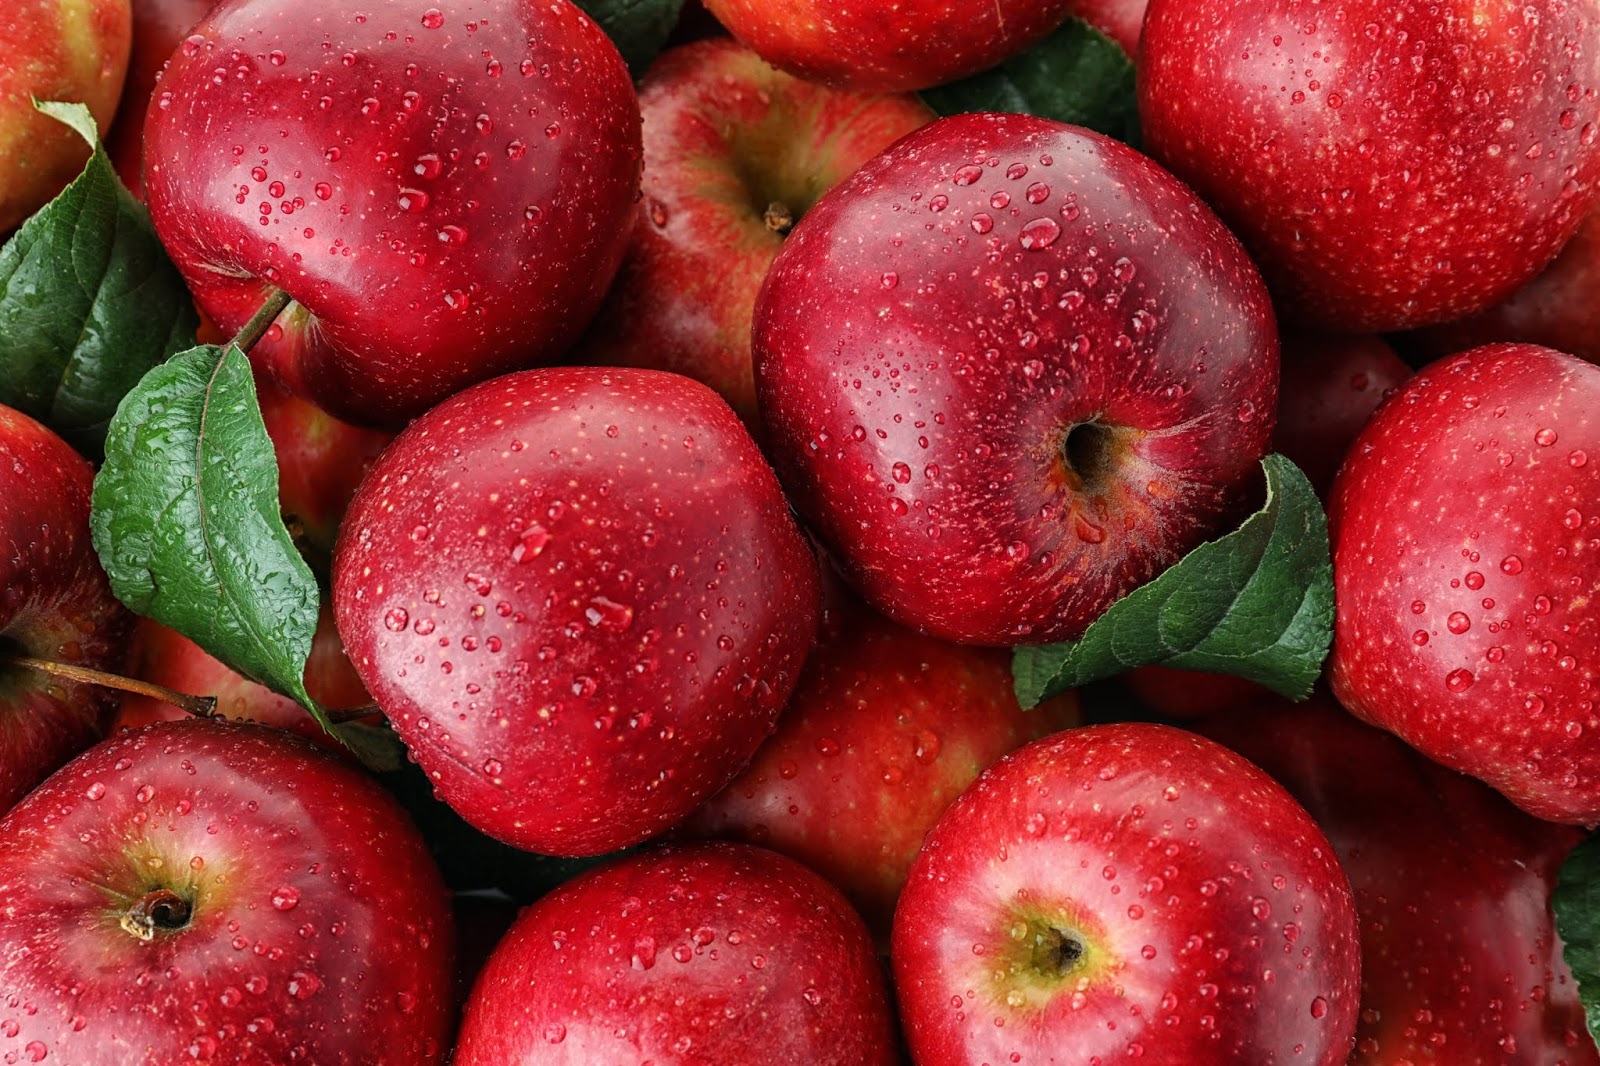  التفاح في المنام - اسرار تفسير الاحلام